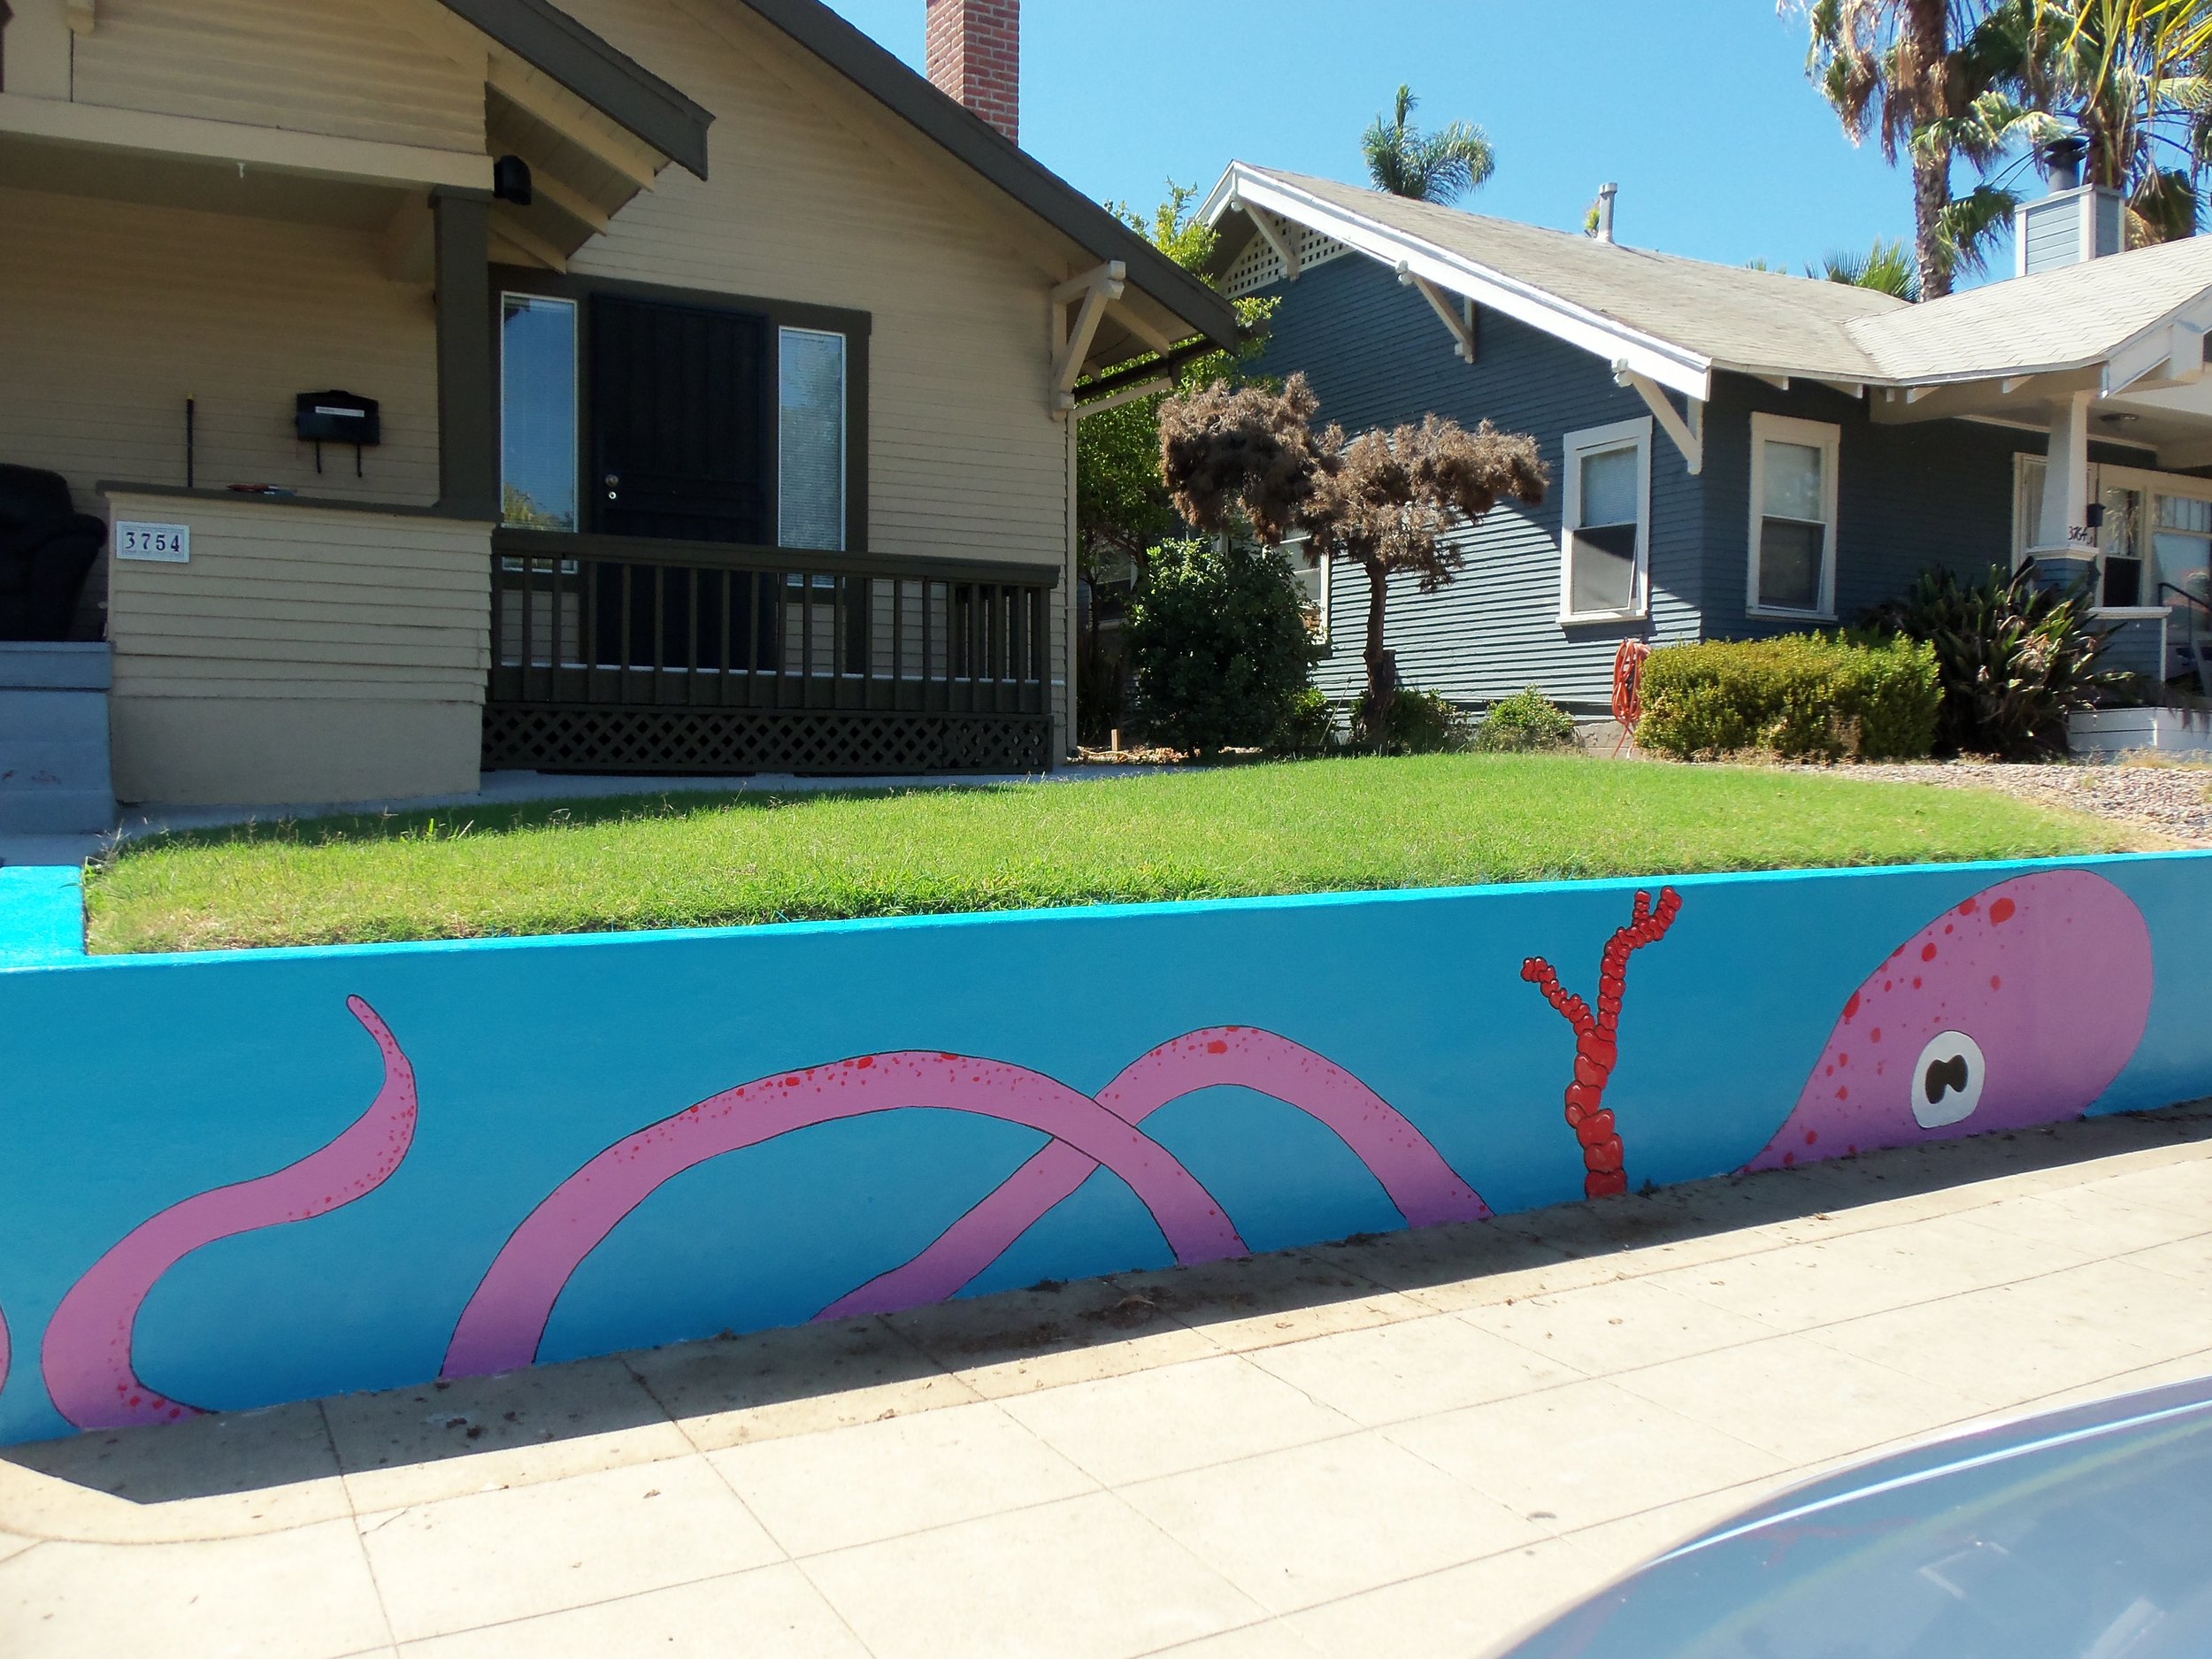 San-Diego-mural-gonza-fish-2015-julio-gonzalez-4.JPG